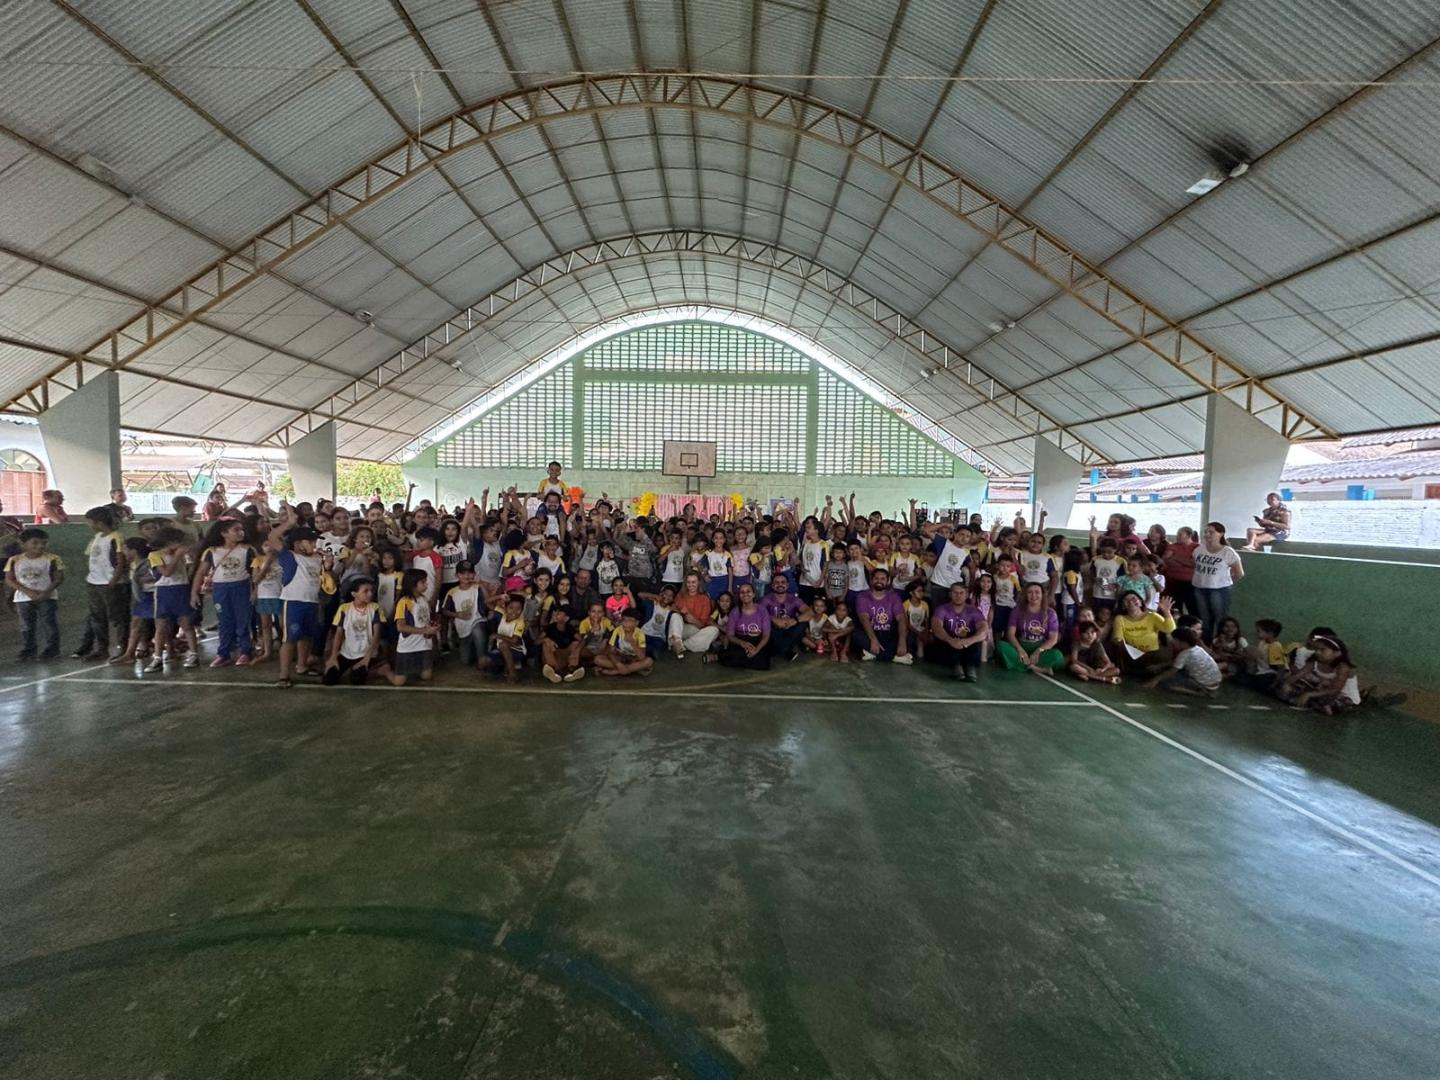 “Campanha Faça Bonito” contou com a mobilização da Justiça do Trabalho em Rondônia e Acre